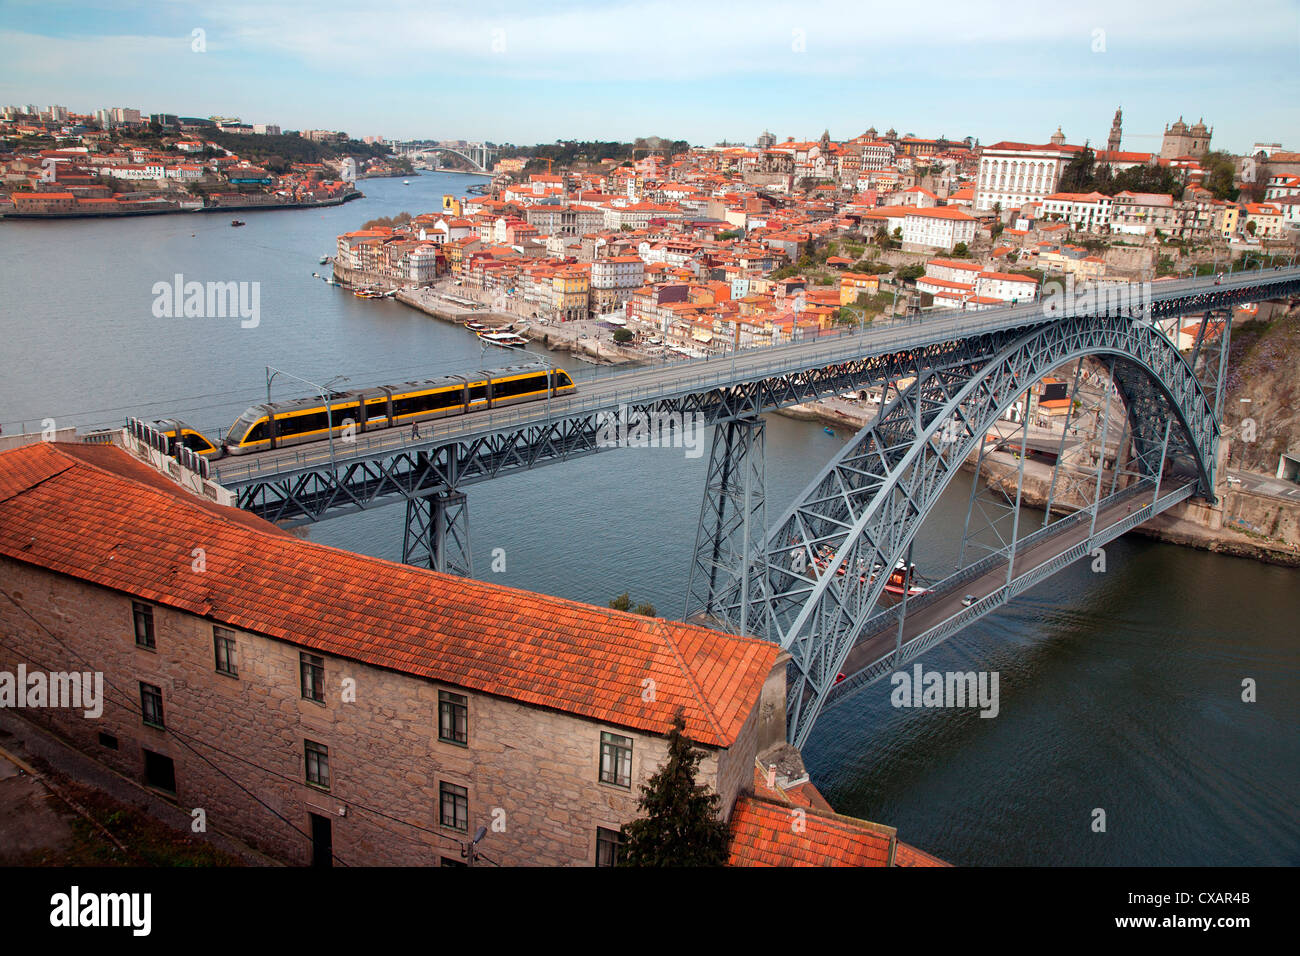 Il Dom Luis 1 ponte sul fiume Douro che mostra metropolitana leggera in transito e Arrabida ponte in background, Porto (Oporto) Foto Stock